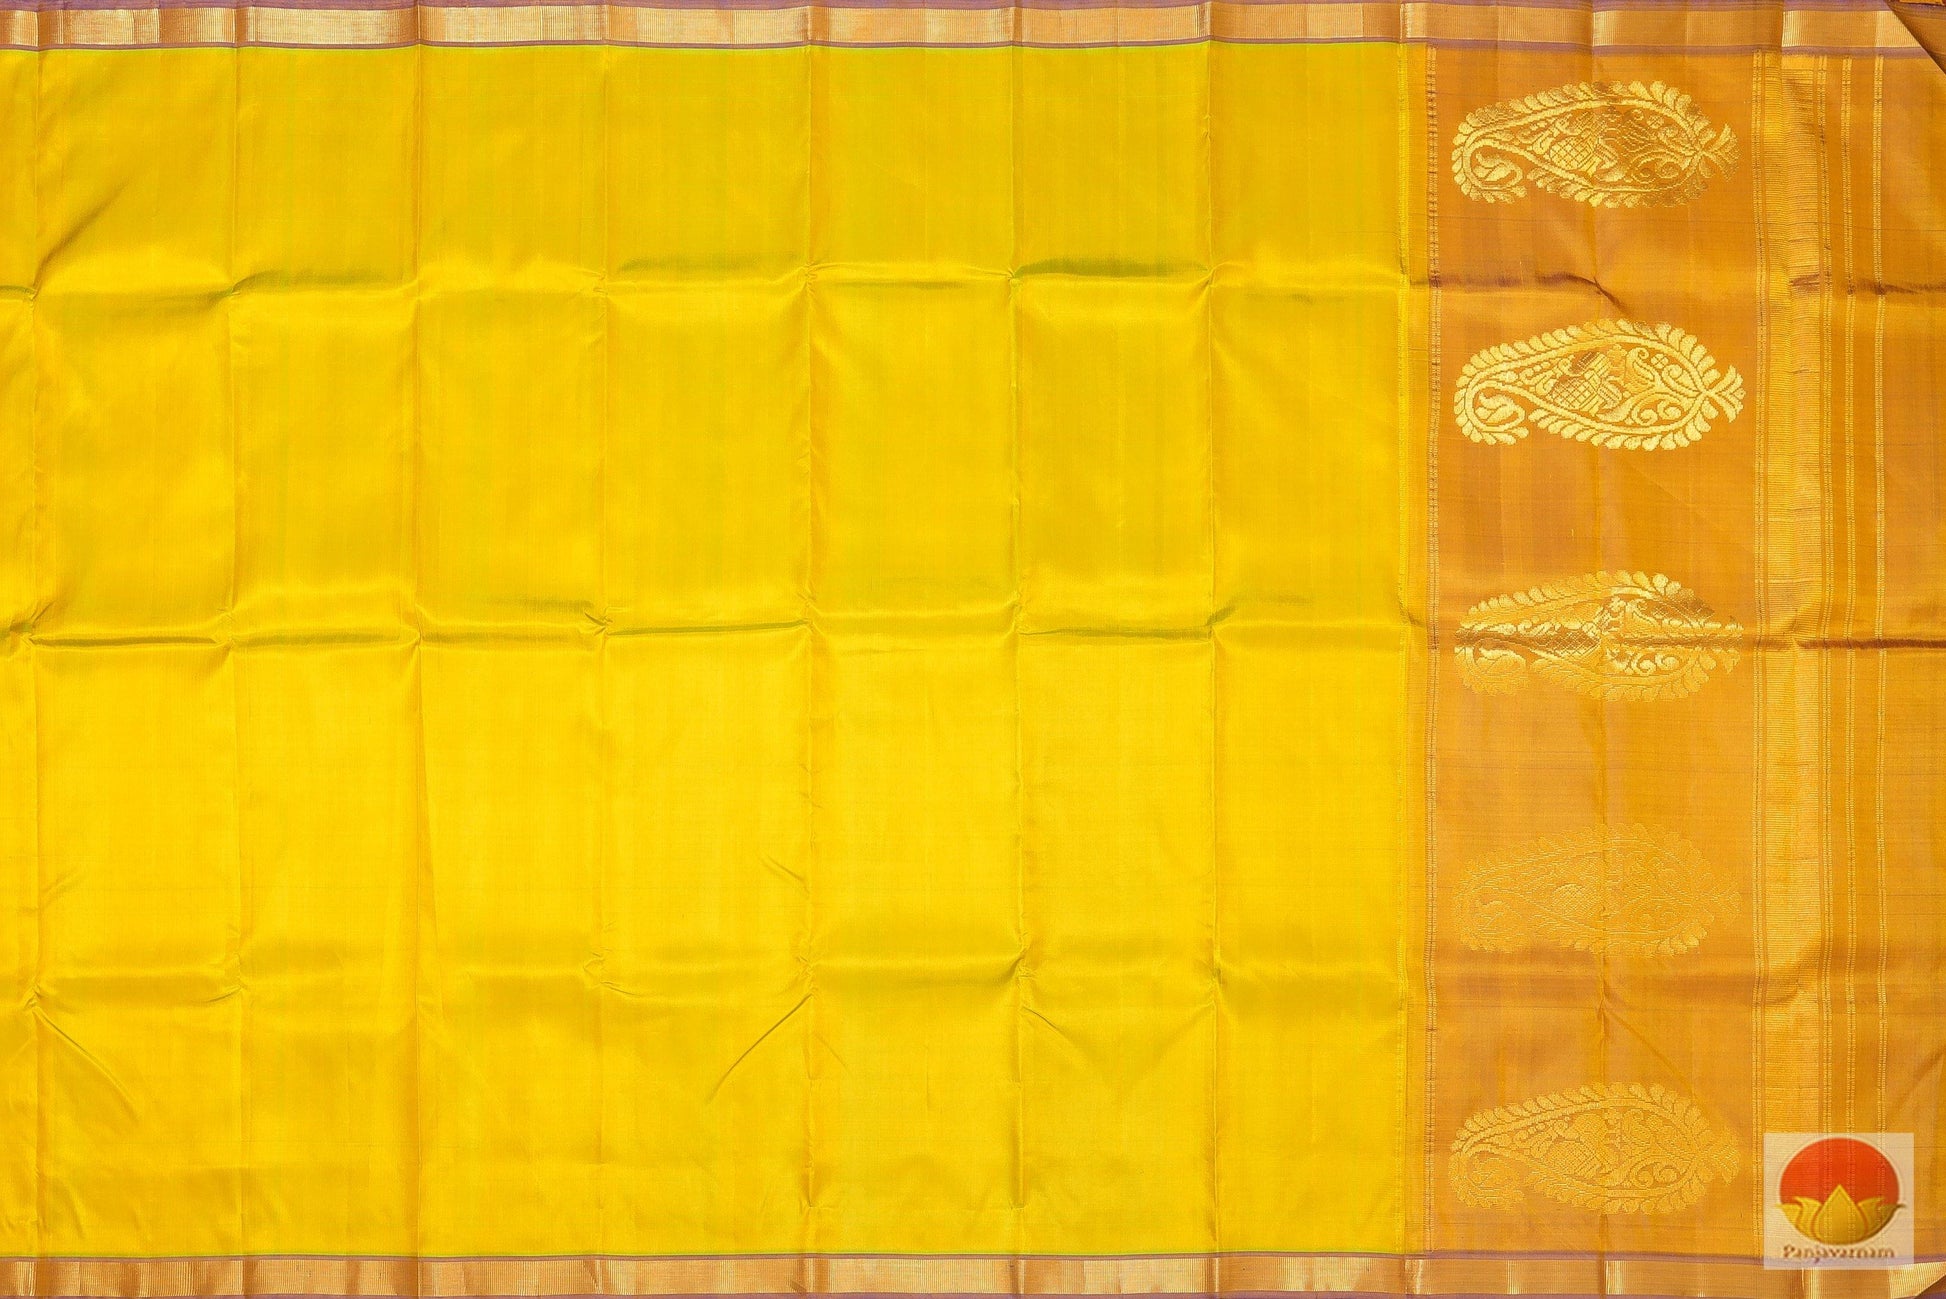 Lite Weight Handwoven Pure Silk Kanjivaram Saree - PV G 1871 Archives - Silk Sari - Panjavarnam